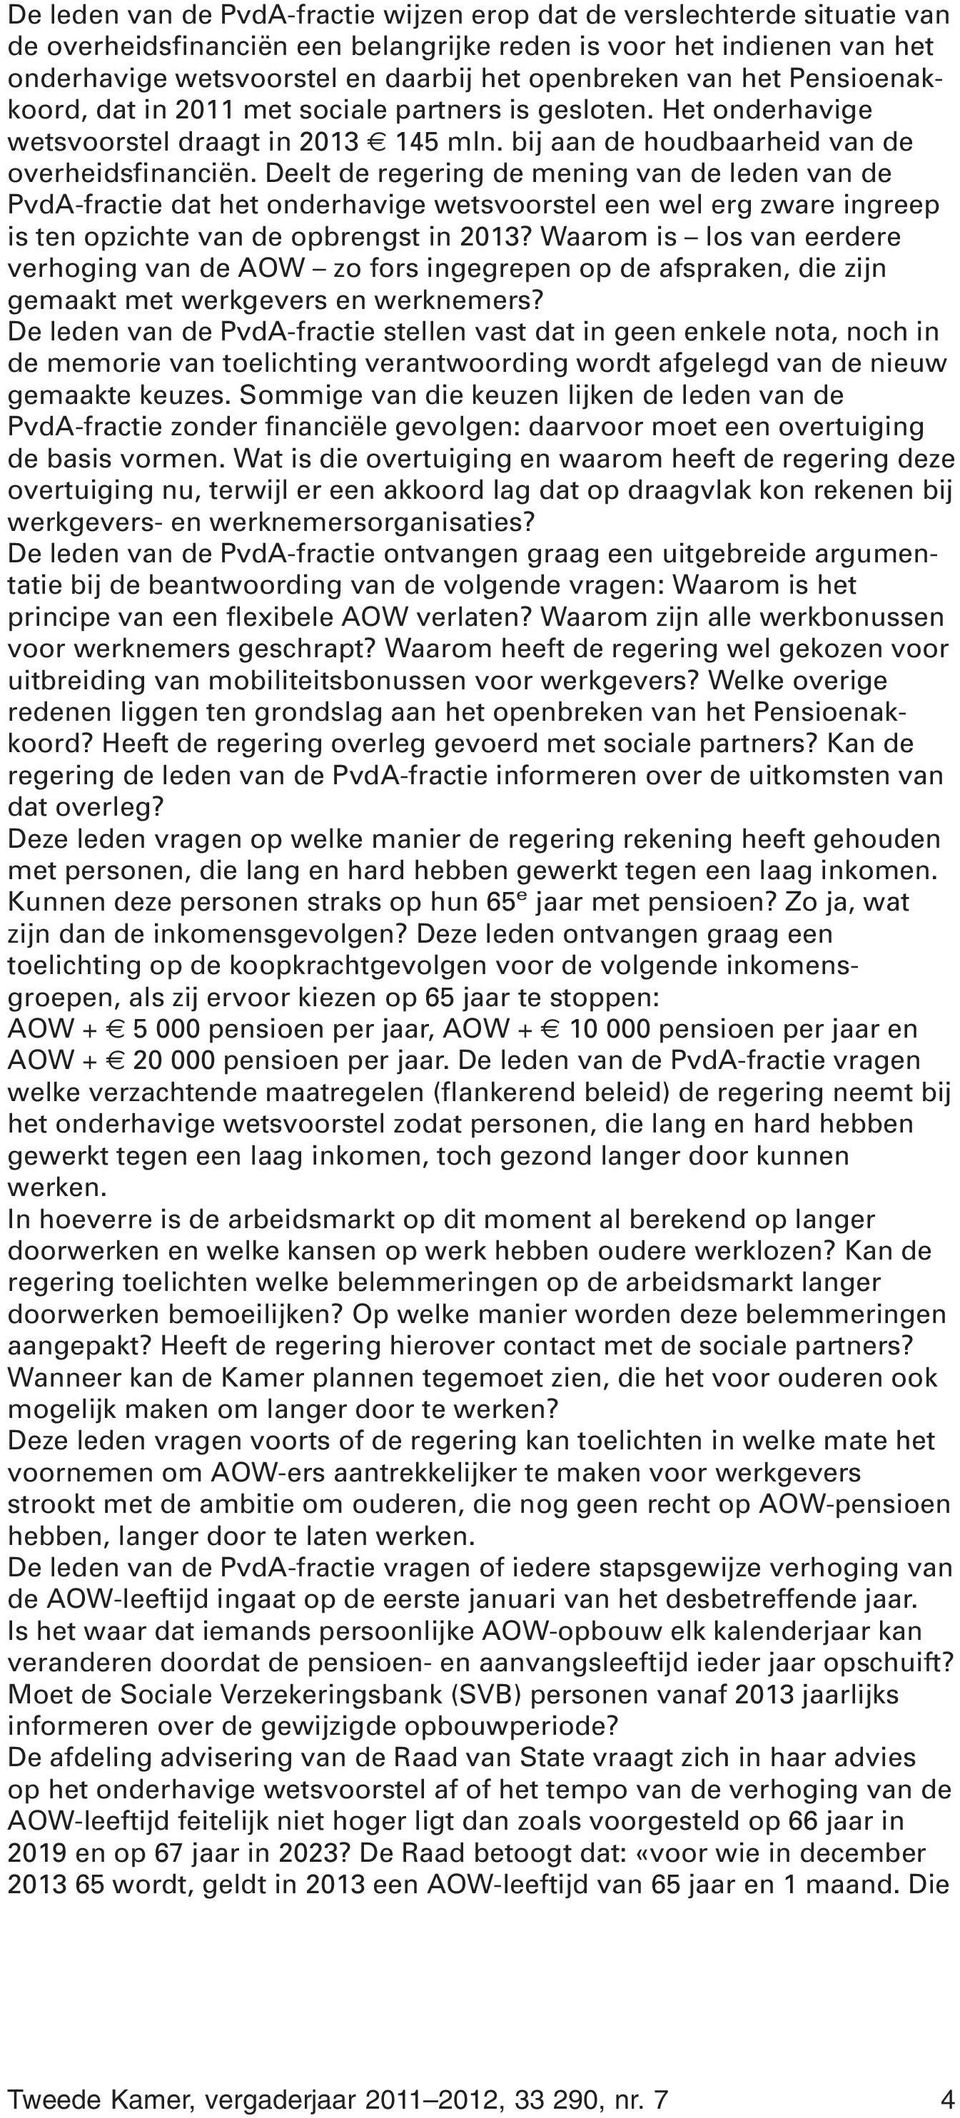 Deelt de regering de mening van de leden van de PvdA-fractie dat het onderhavige wetsvoorstel een wel erg zware ingreep is ten opzichte van de opbrengst in 2013?